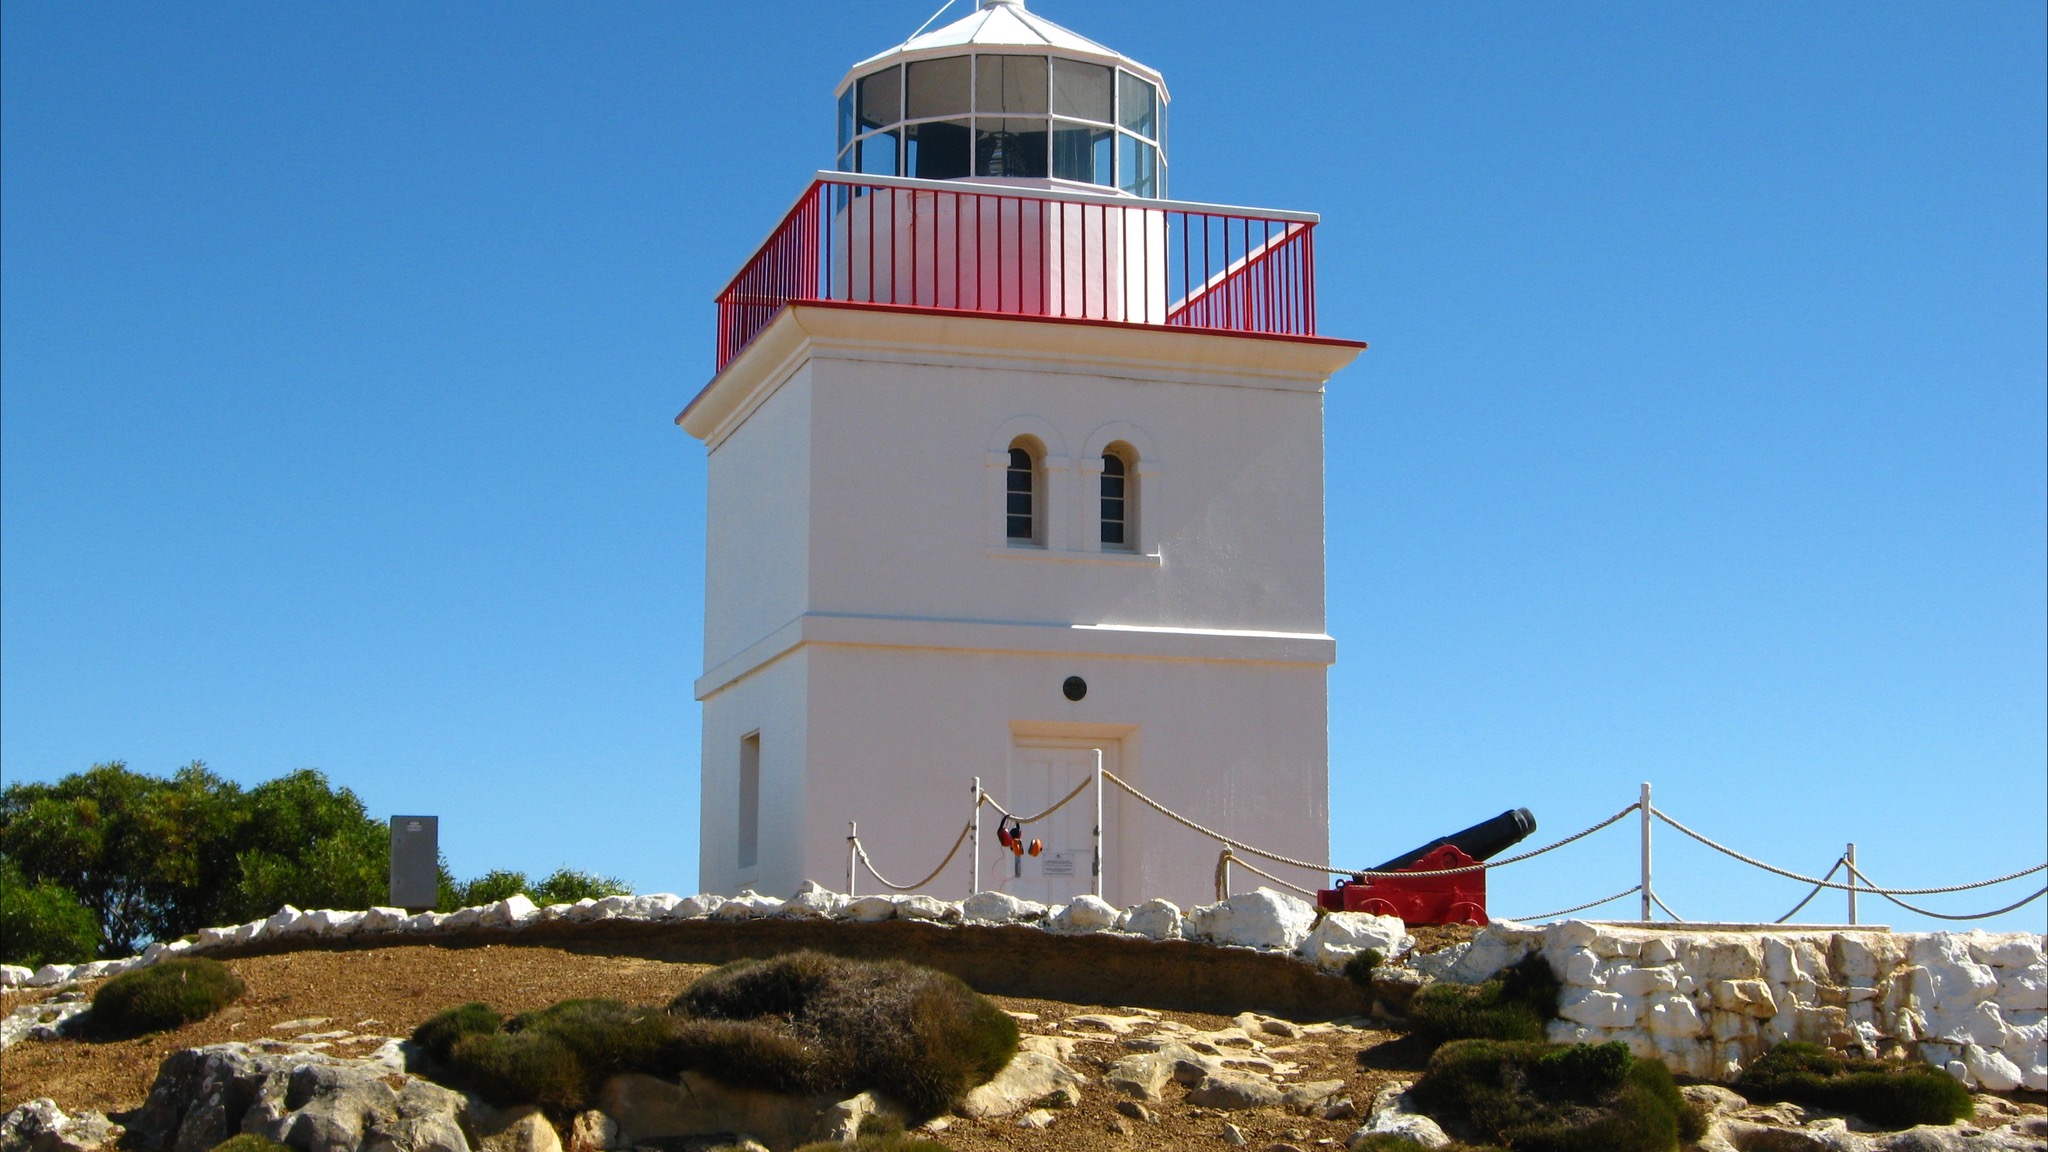 Cape Borda Lighthouse Keepers Heritage Accommodation - Accommodation Newcastle